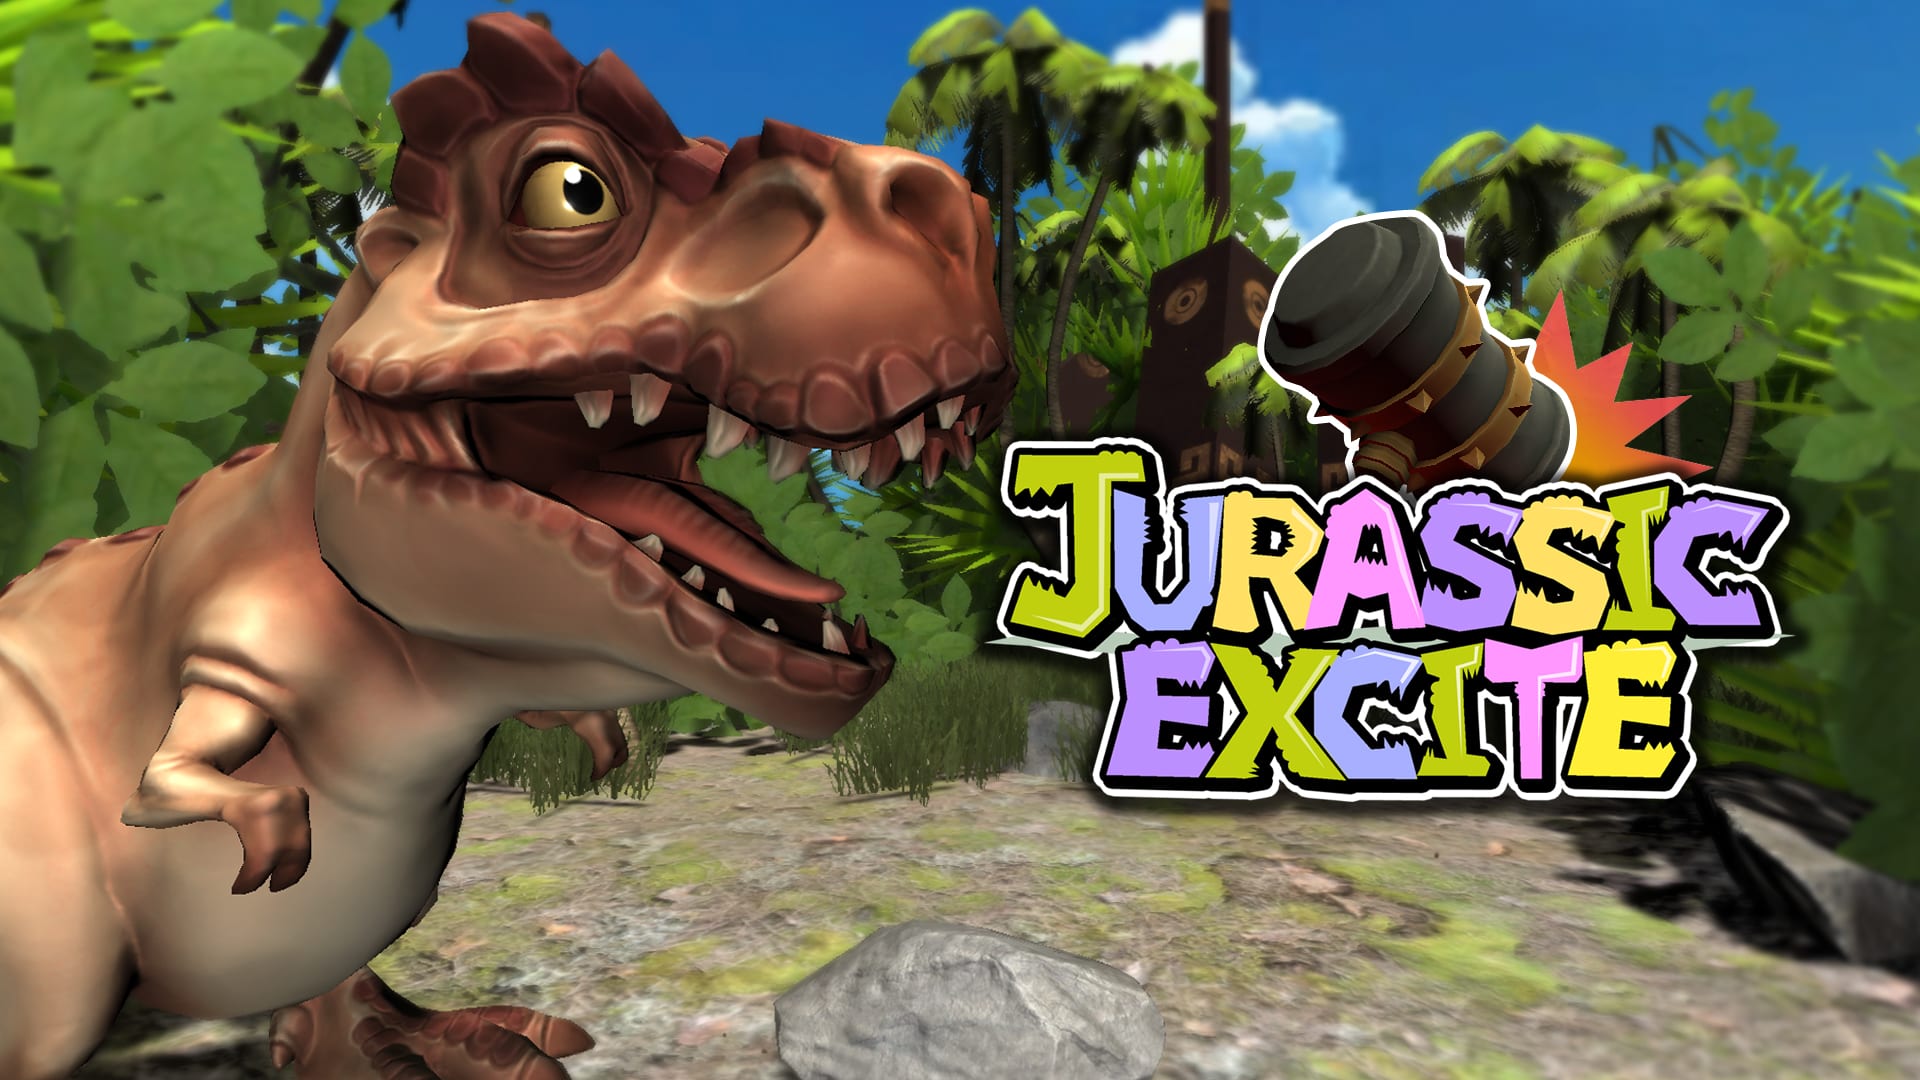 Jurassic Excite